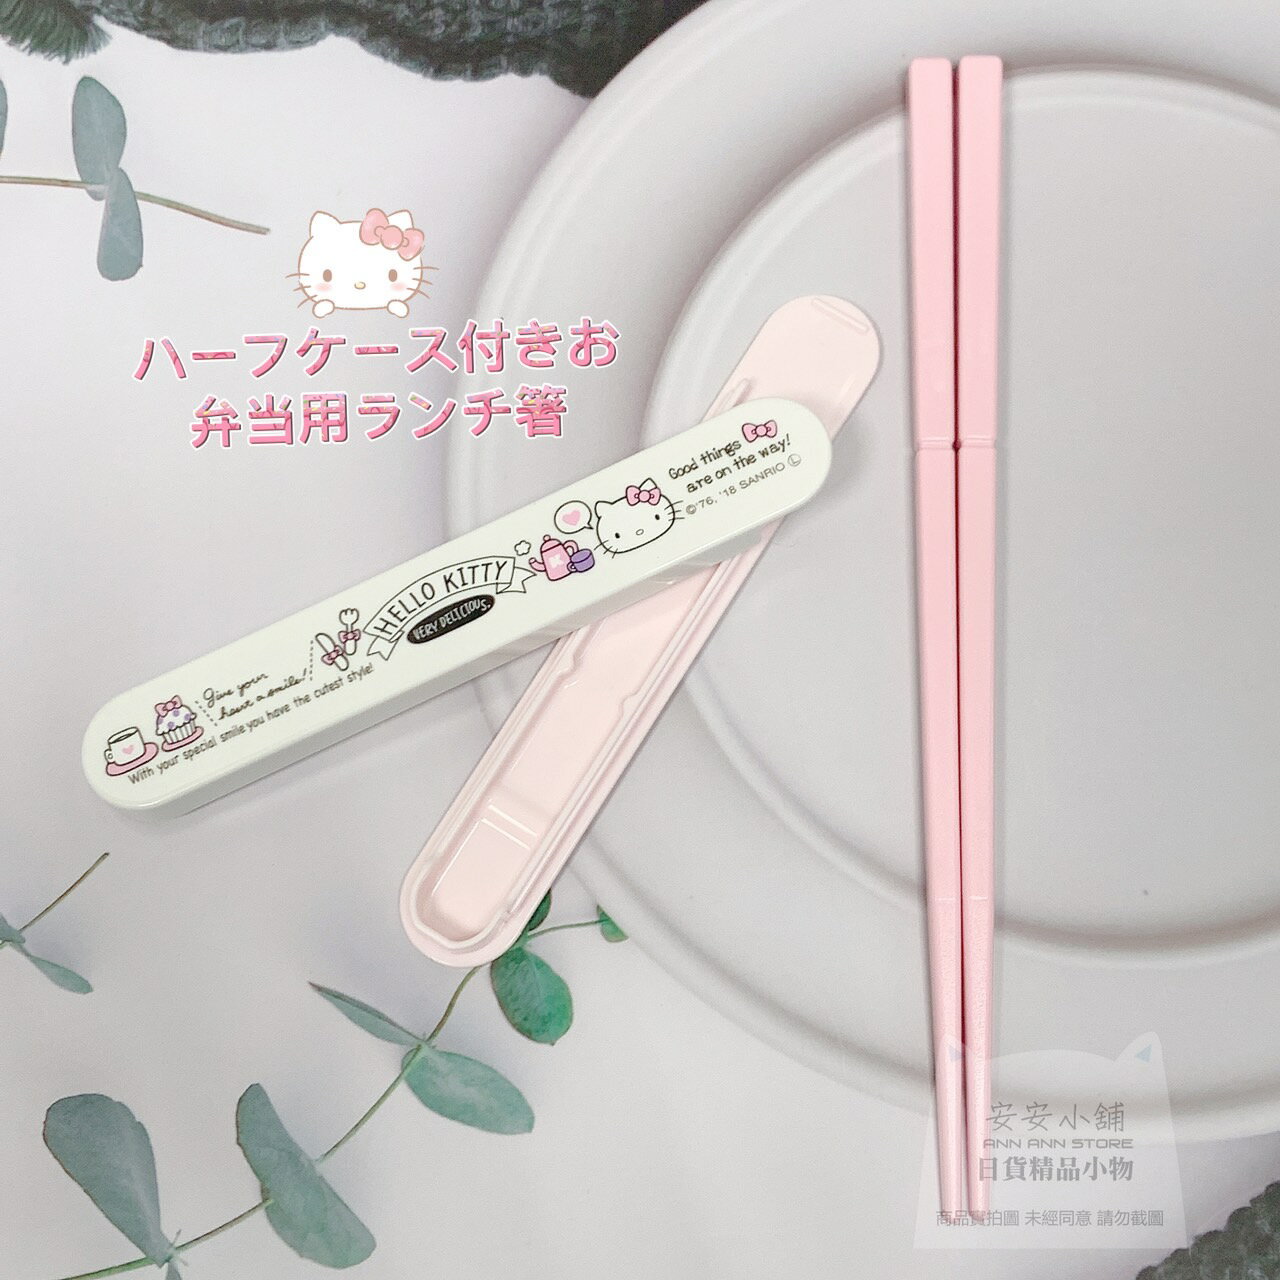 日本代購直送 現貨 三麗鷗 凱蒂貓 環保筷 可重複使用 Hello Kitty 筷子 塑膠筷 環保餐具附盒方便收納便攜